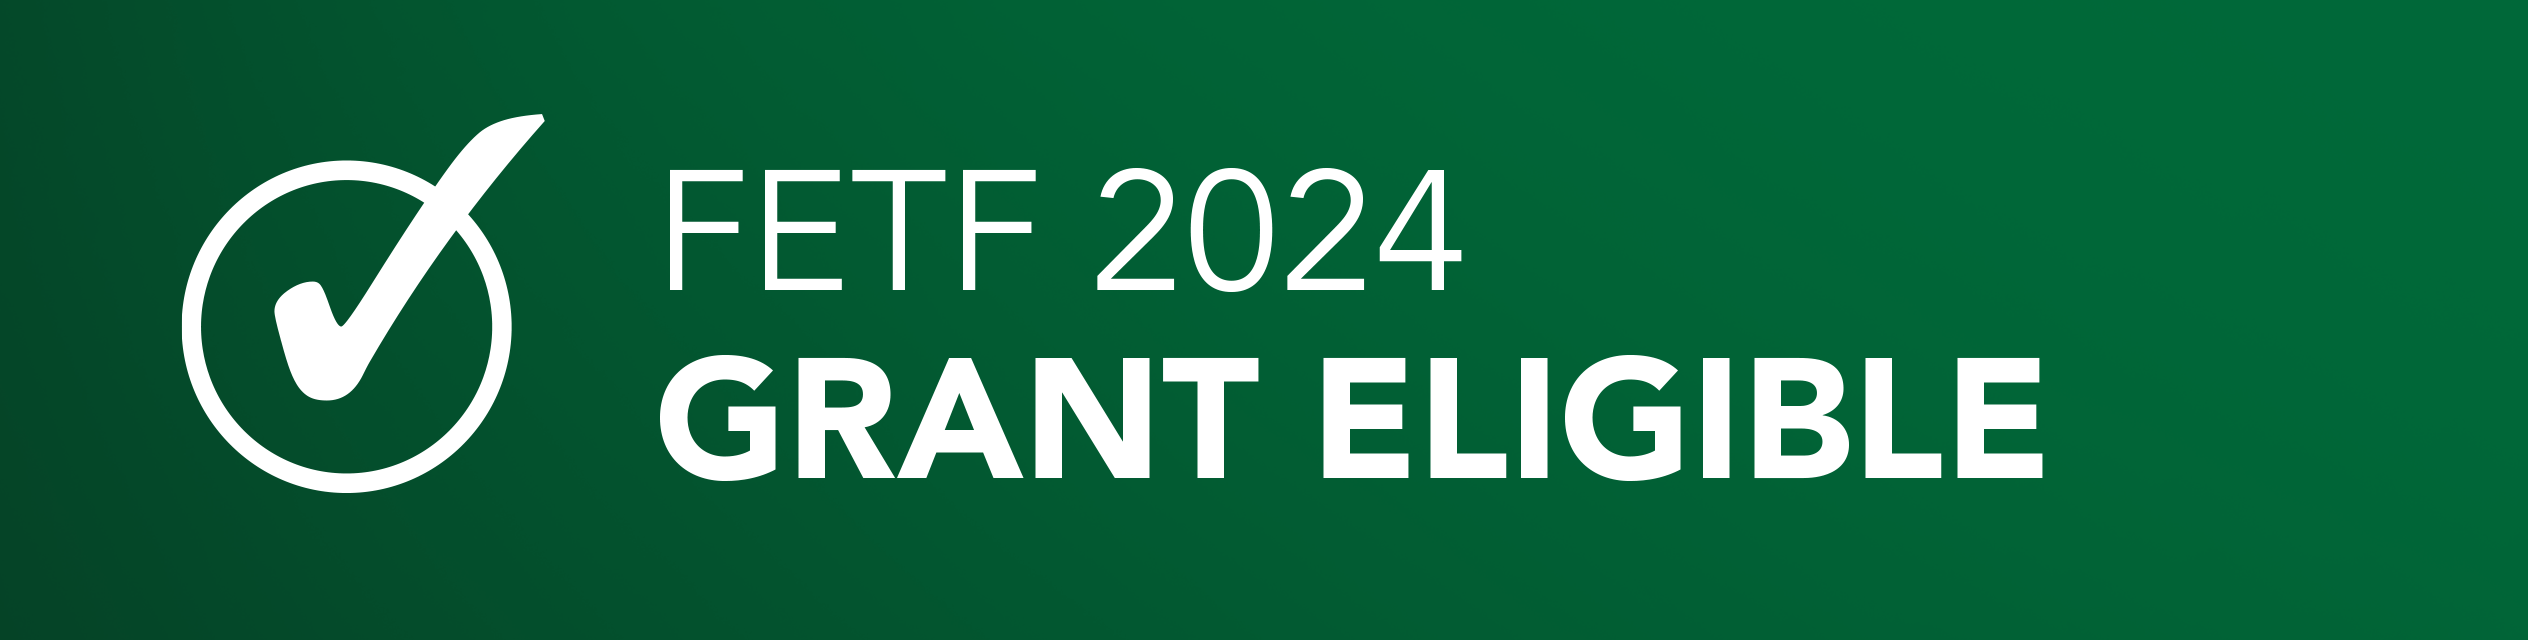 FETF 2024 Grant Eligible Banner